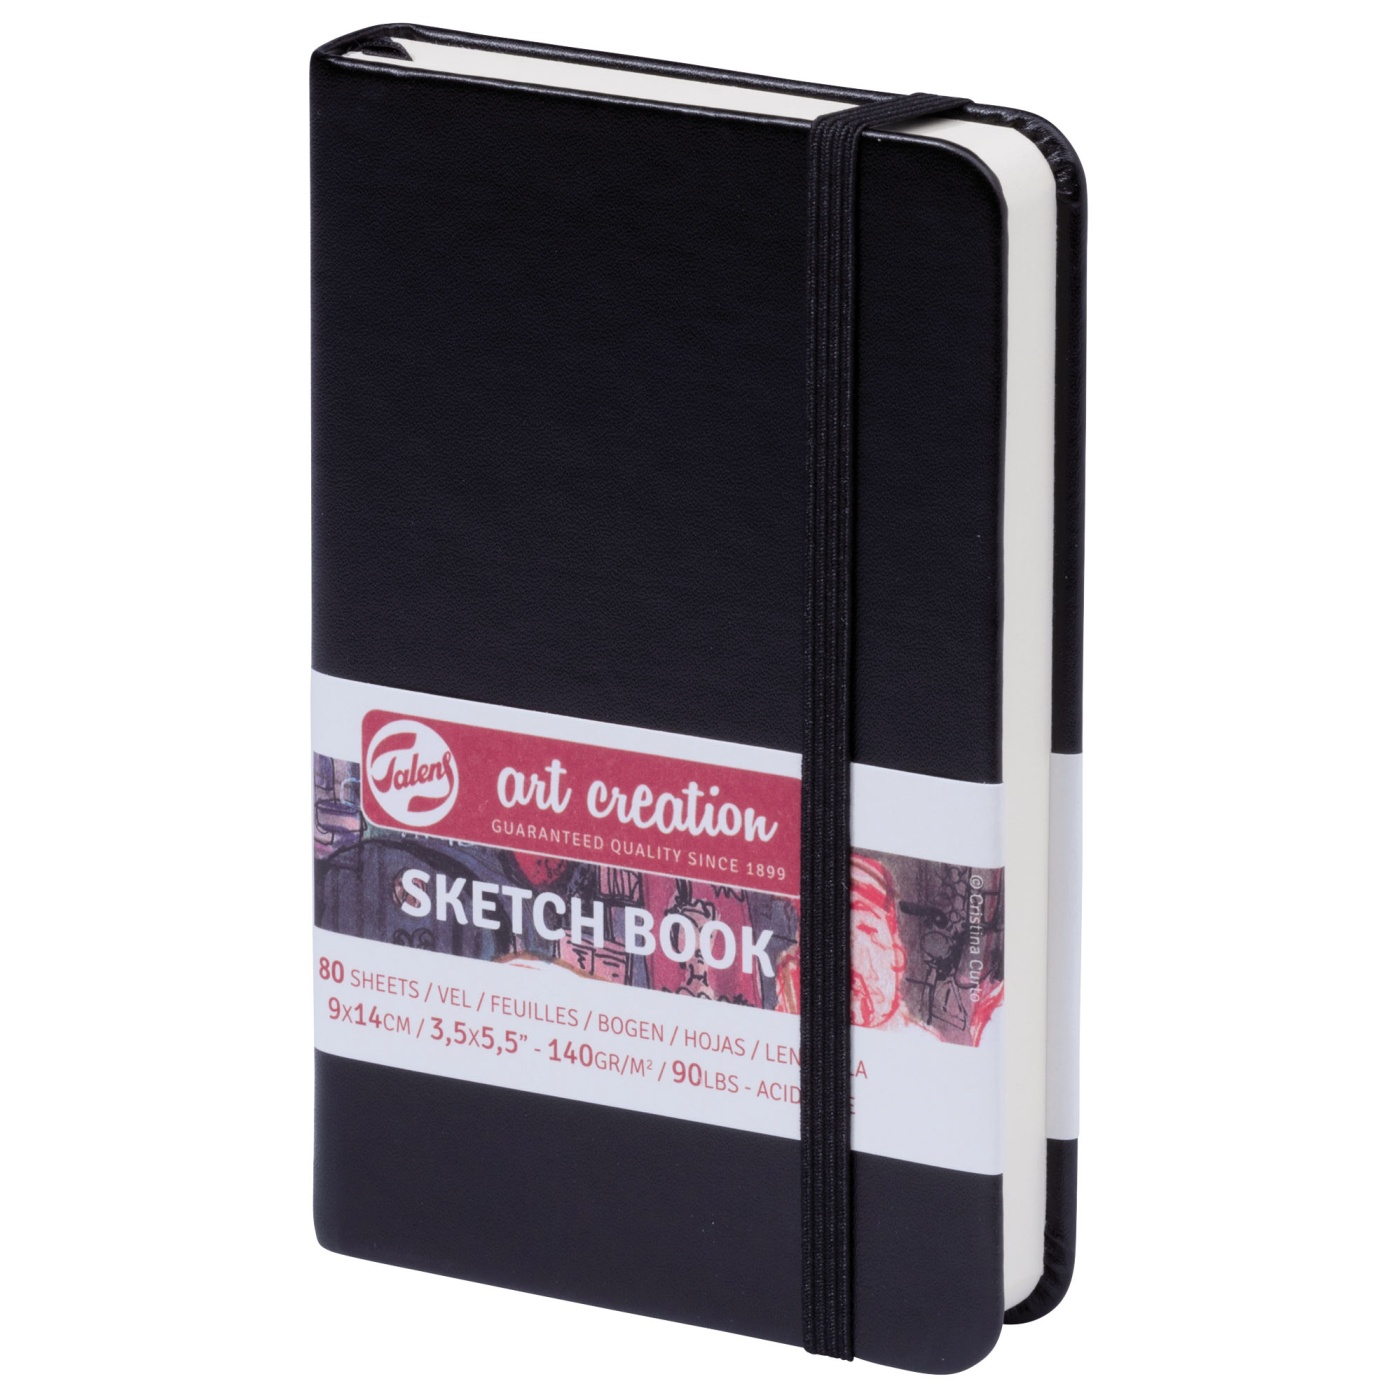 Pocket Sketchbook-8  Sketch book, Art journal inspiration, Sketchbook  journaling